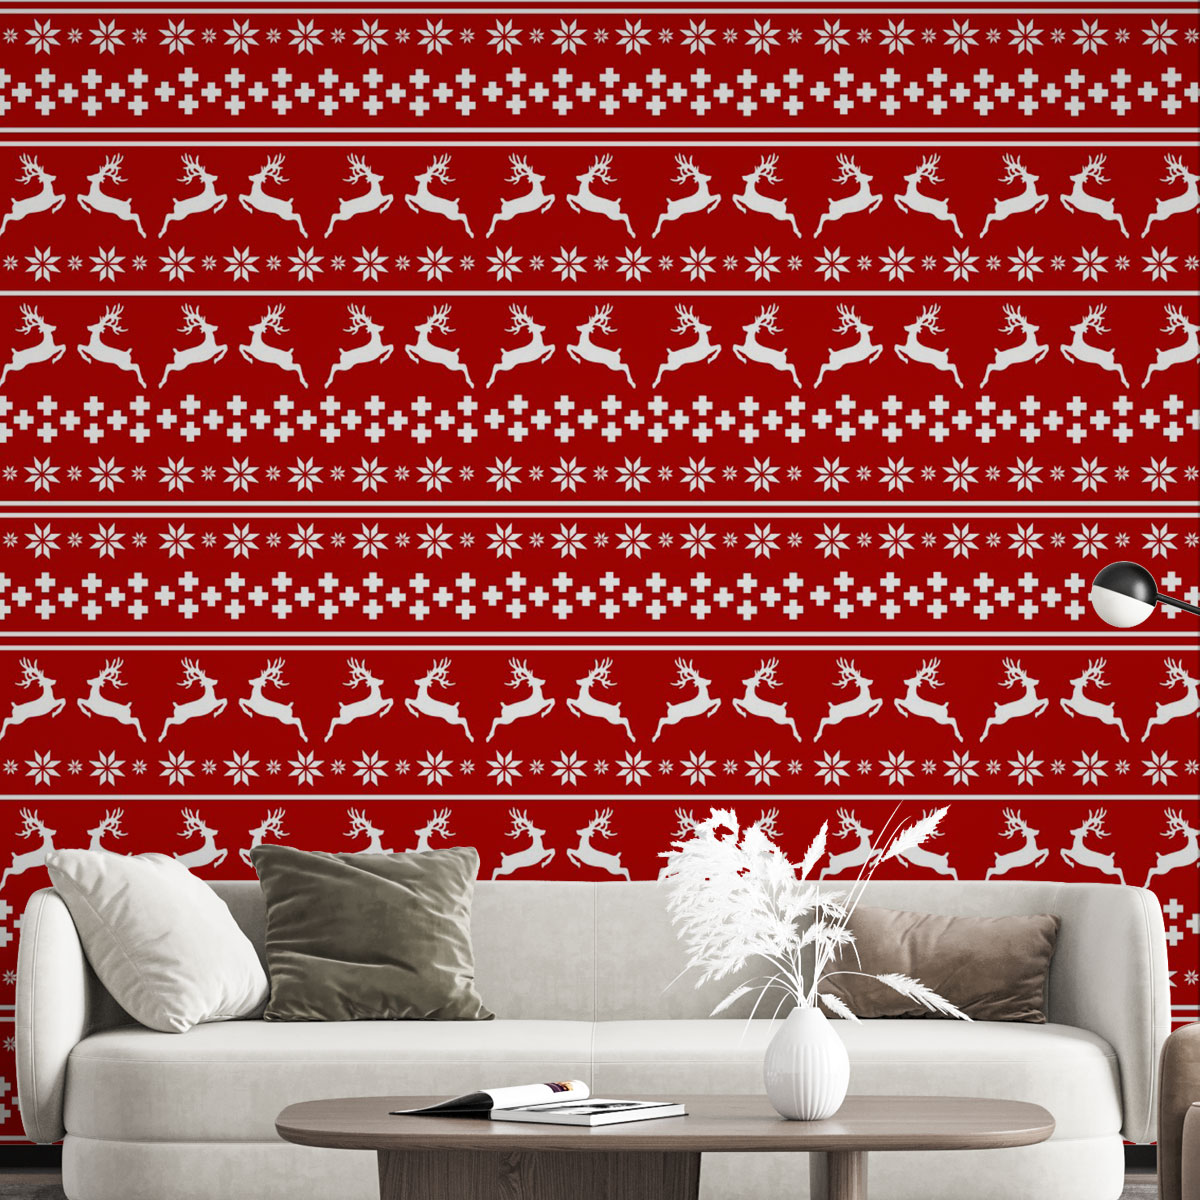 Christmas Reindeer, Snowflake Pattern Wall Mural